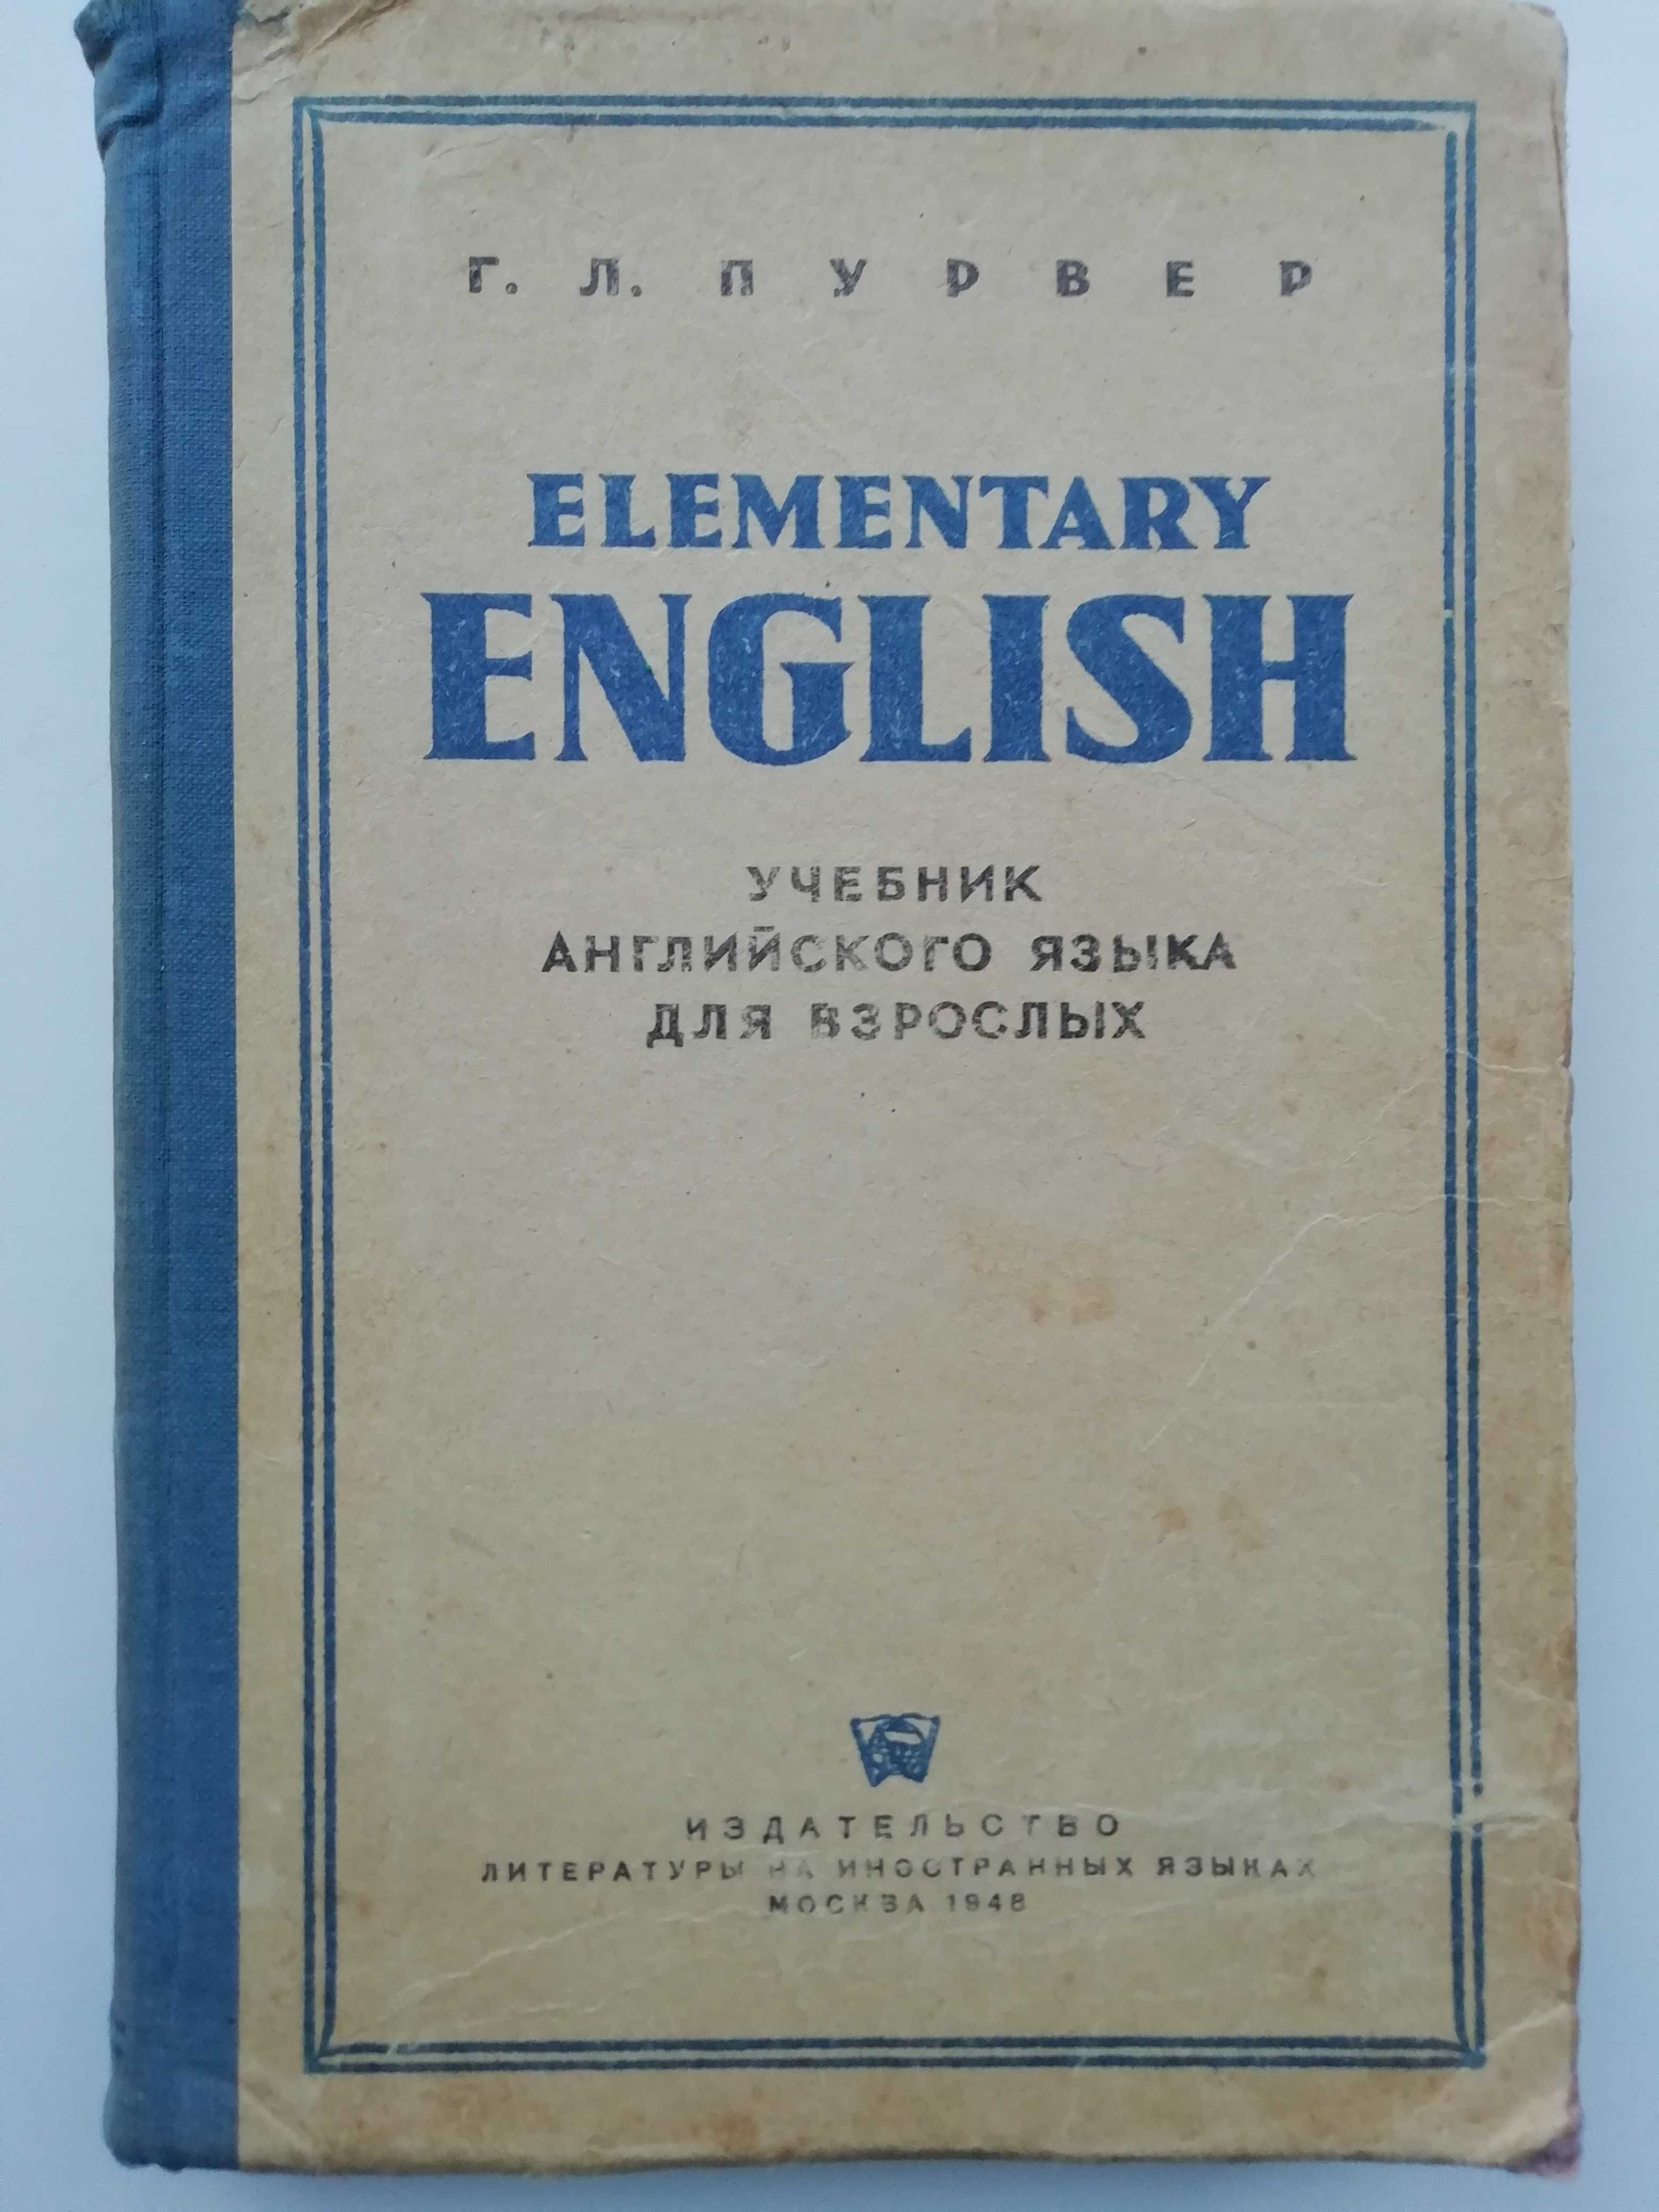 Учебник английского языка для взрослых. Elementary English.Г.Пурвер.